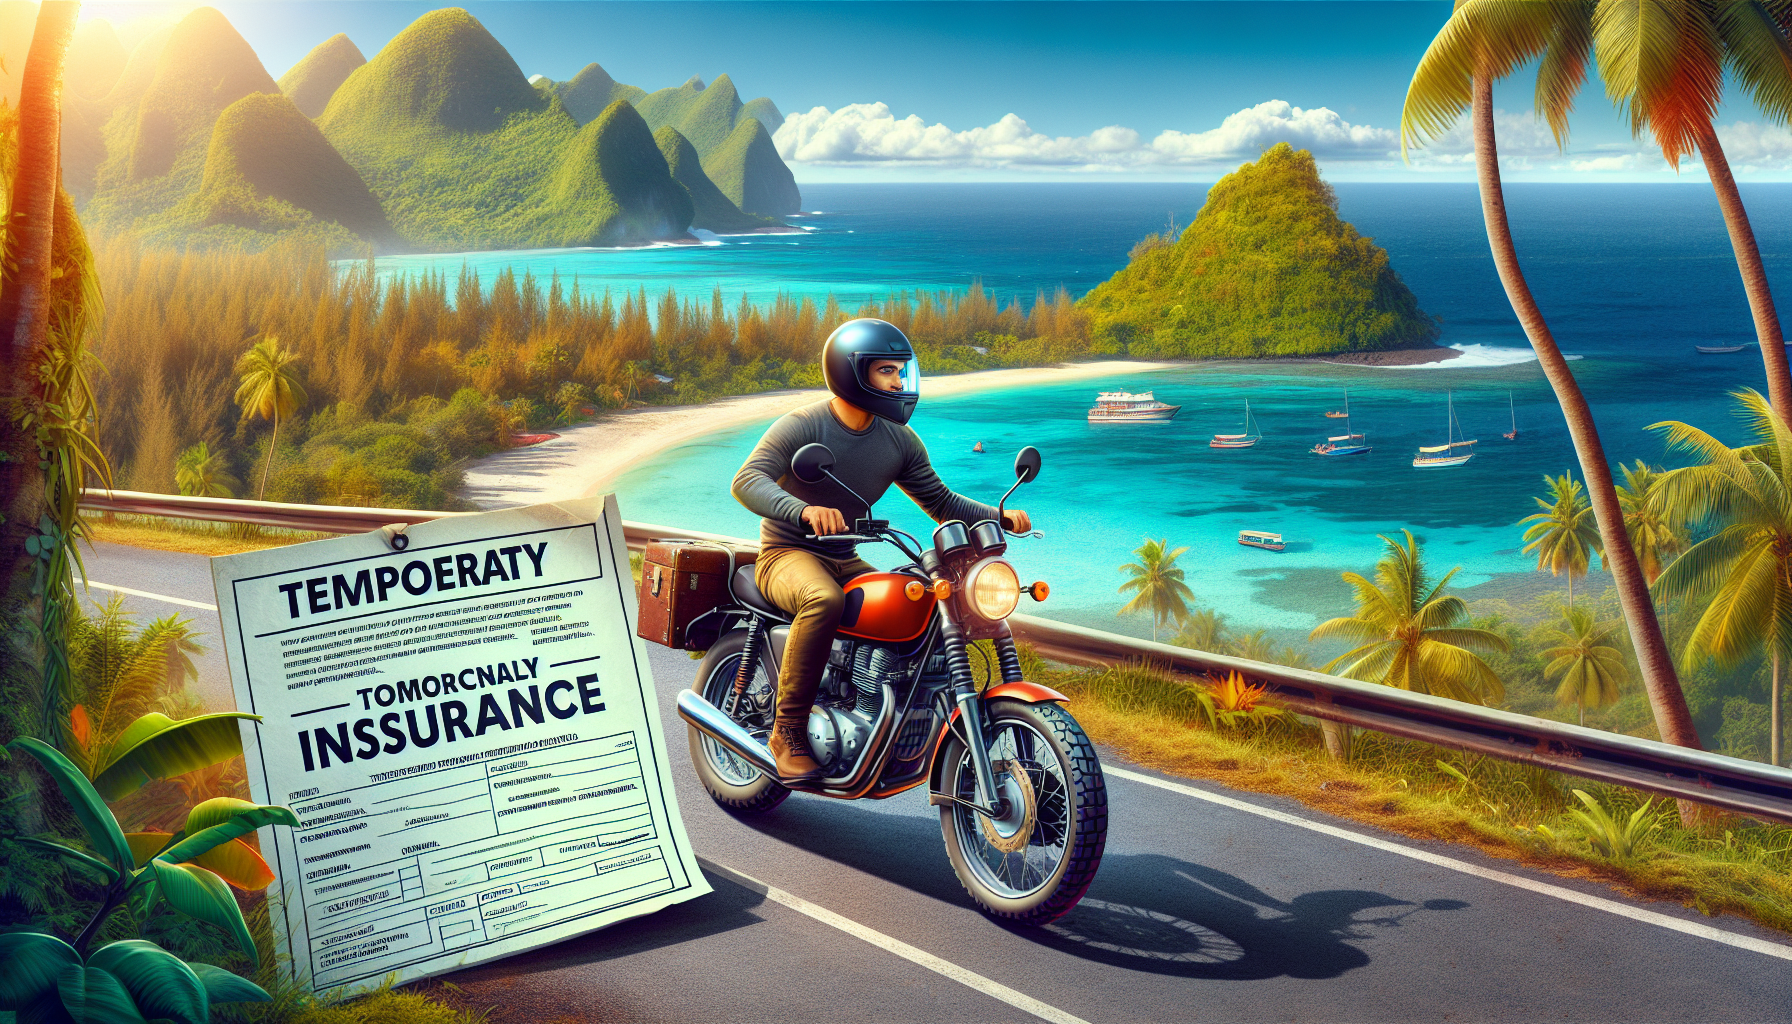 assurance moto temporaire à la réunion: obtenez une couverture rapide et flexible pour votre moto à la réunion avec notre assurance moto temporaire.